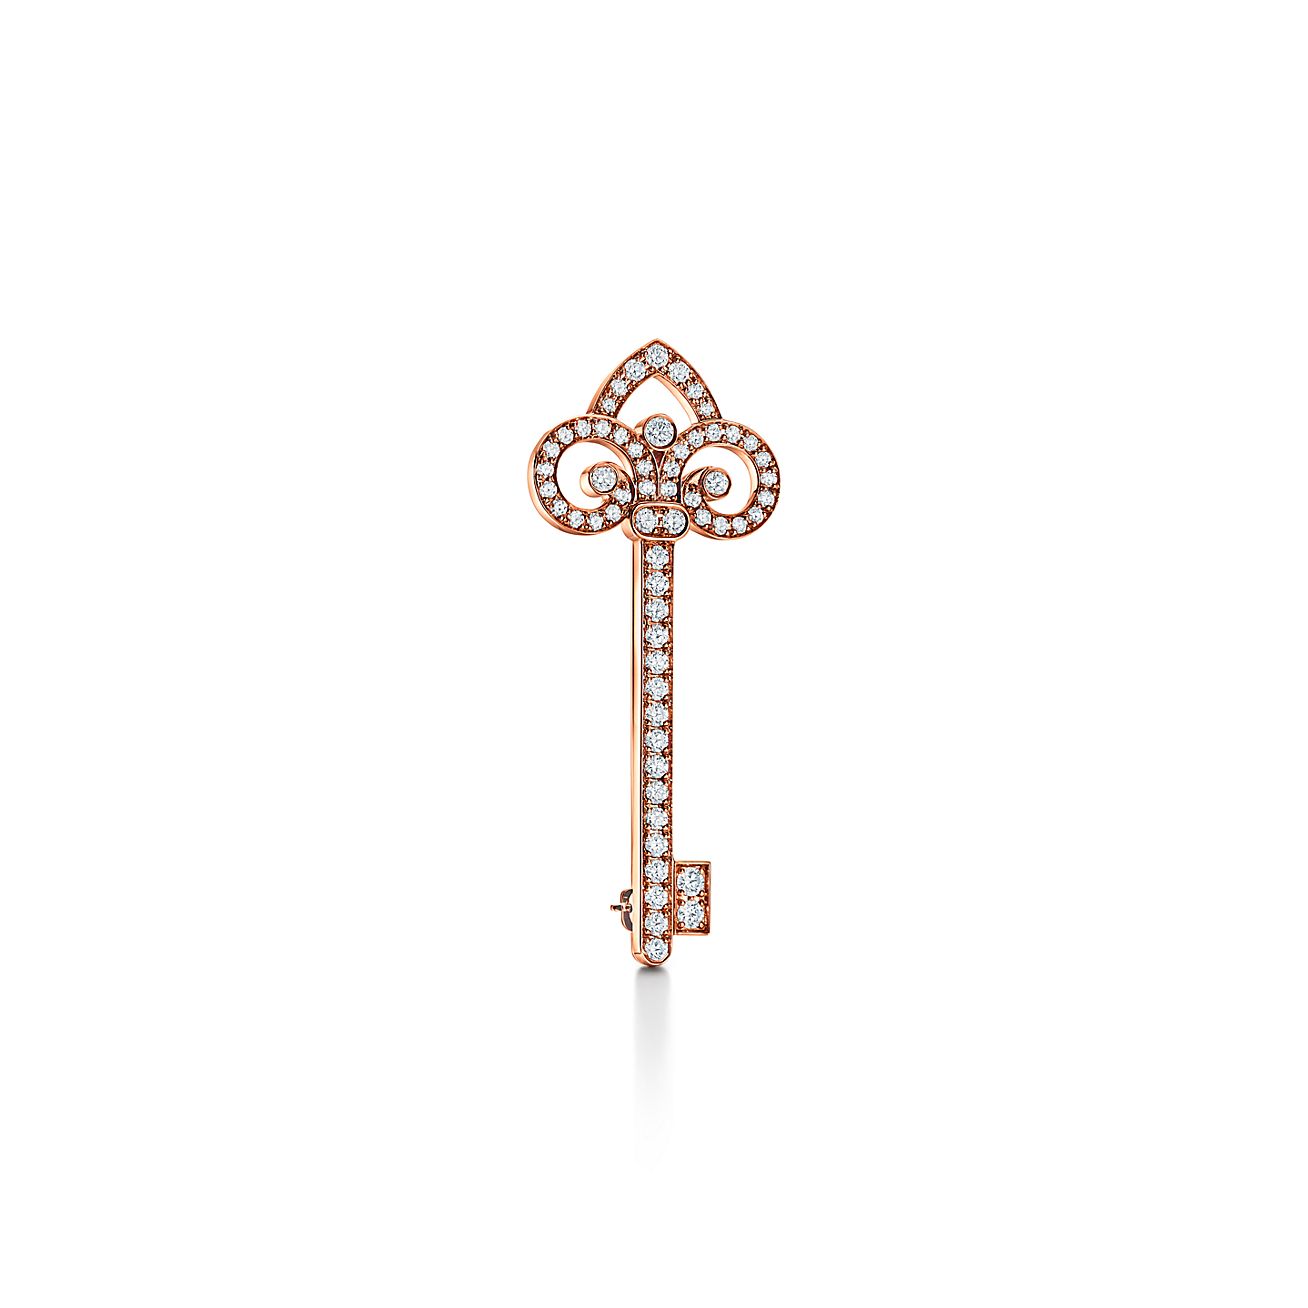 Tiffany Keys Fleur de Lis Key Brooch in Rose Gold with Diamonds